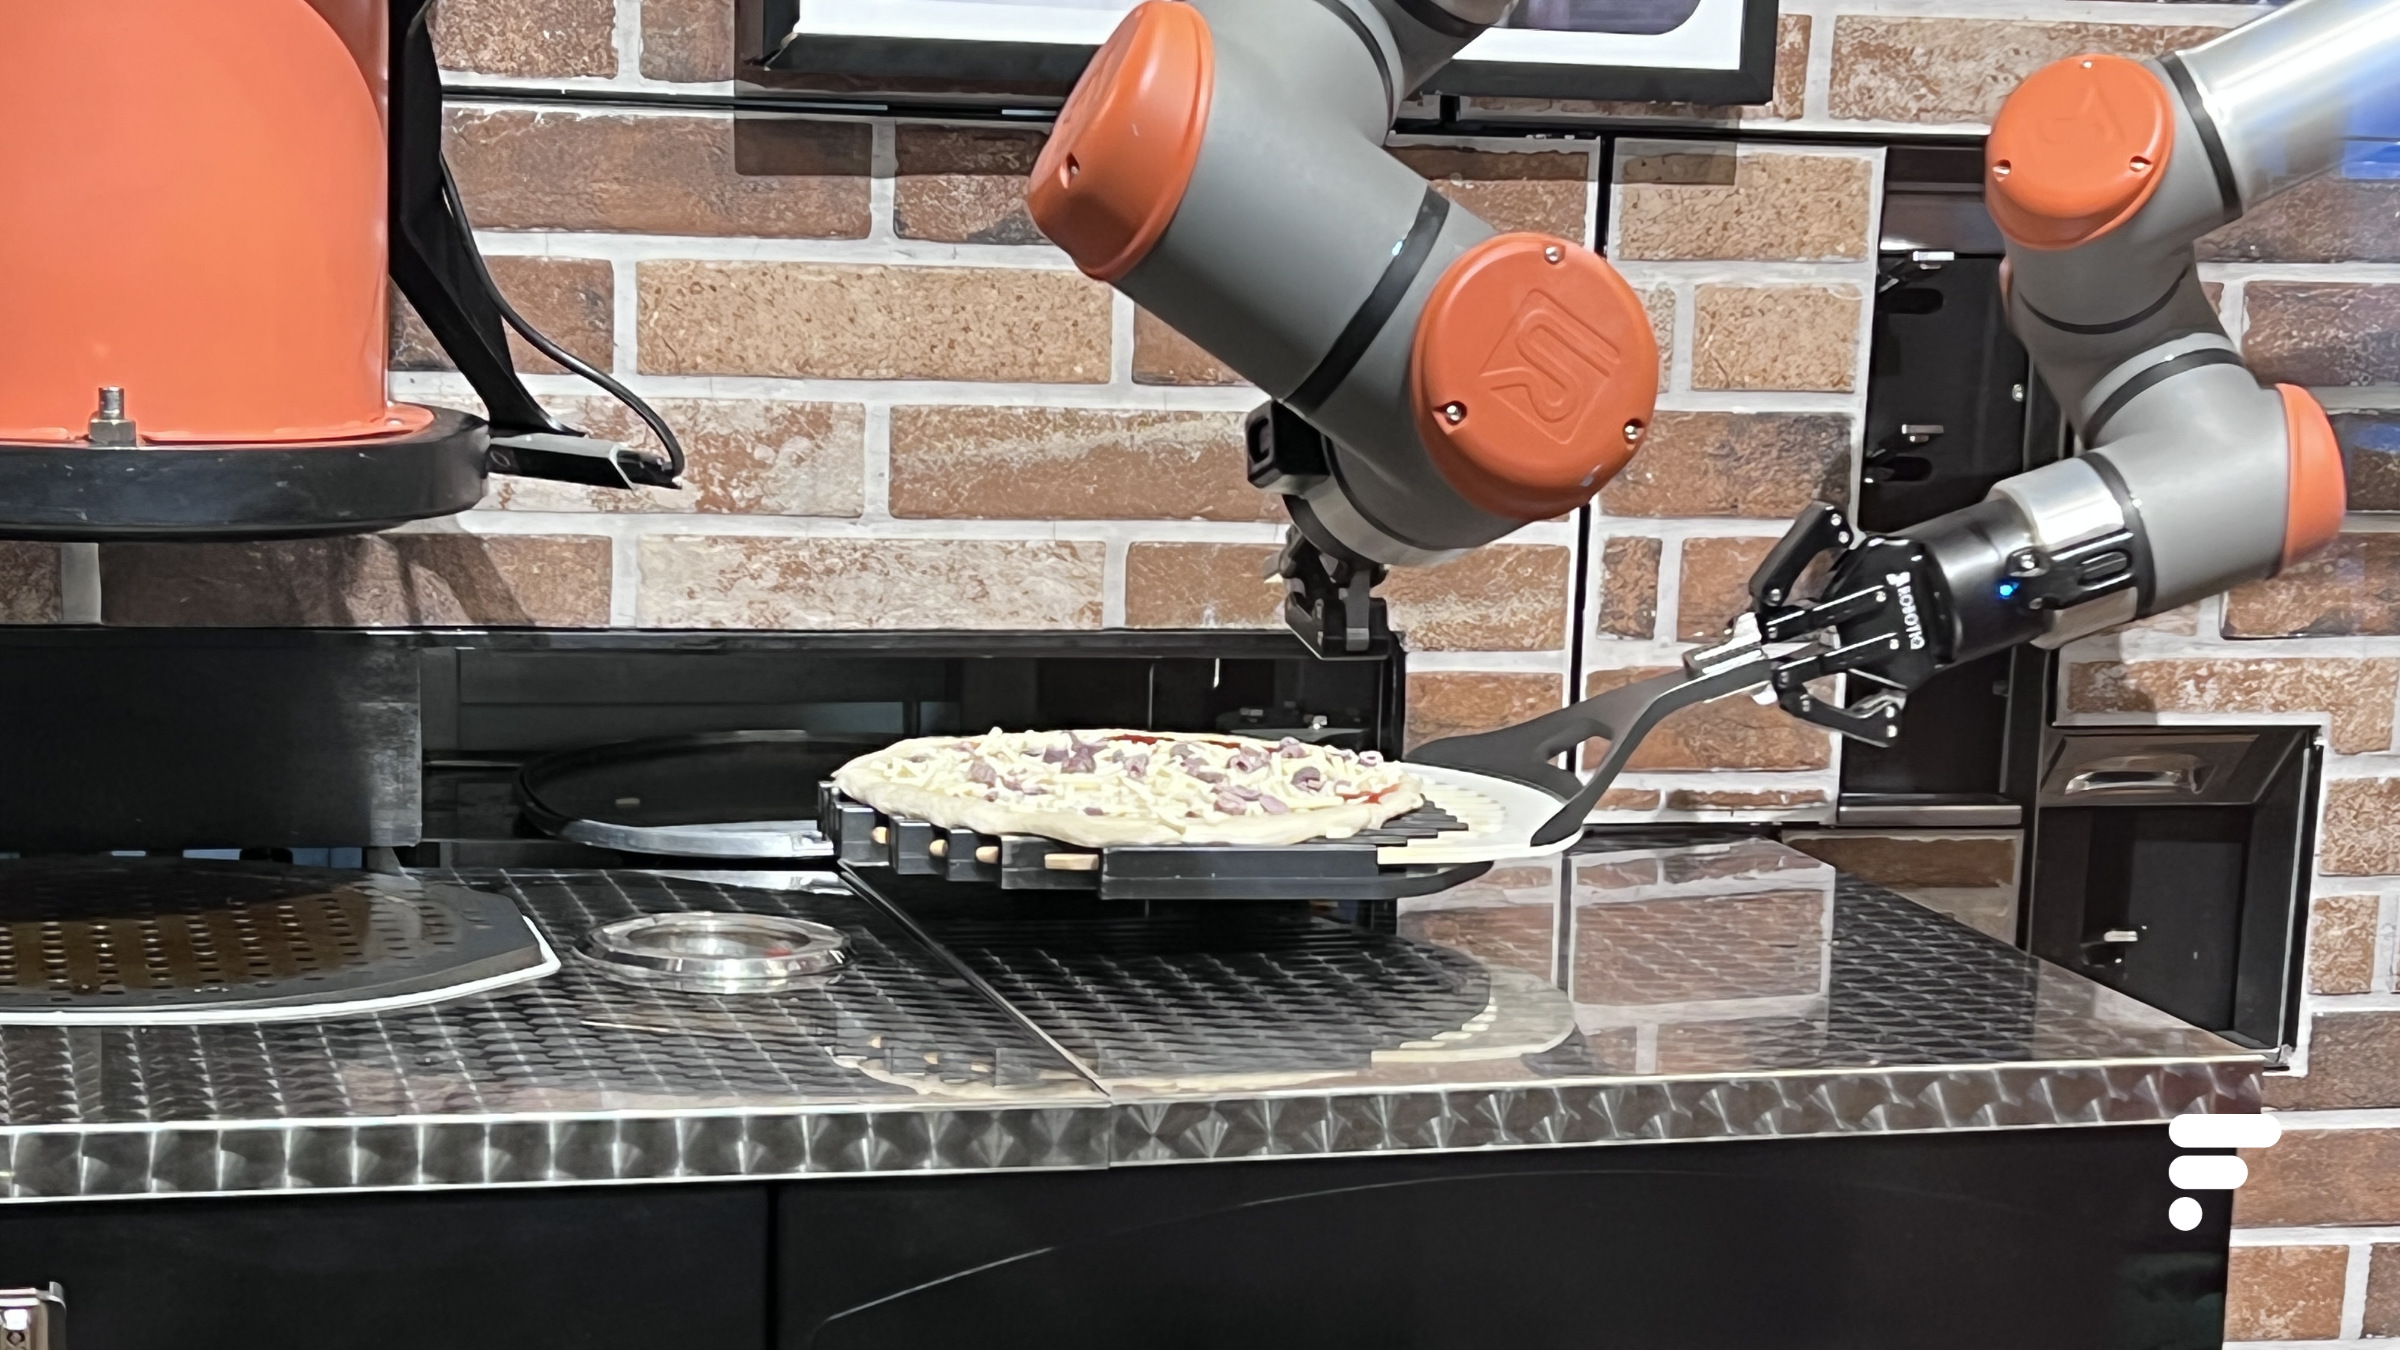 Le robot se charge de préparer la pâte, mettre les aliments, puis envoyer la pizza au four // Source : FRANDROID - Melinda DAVAN-SOULAS